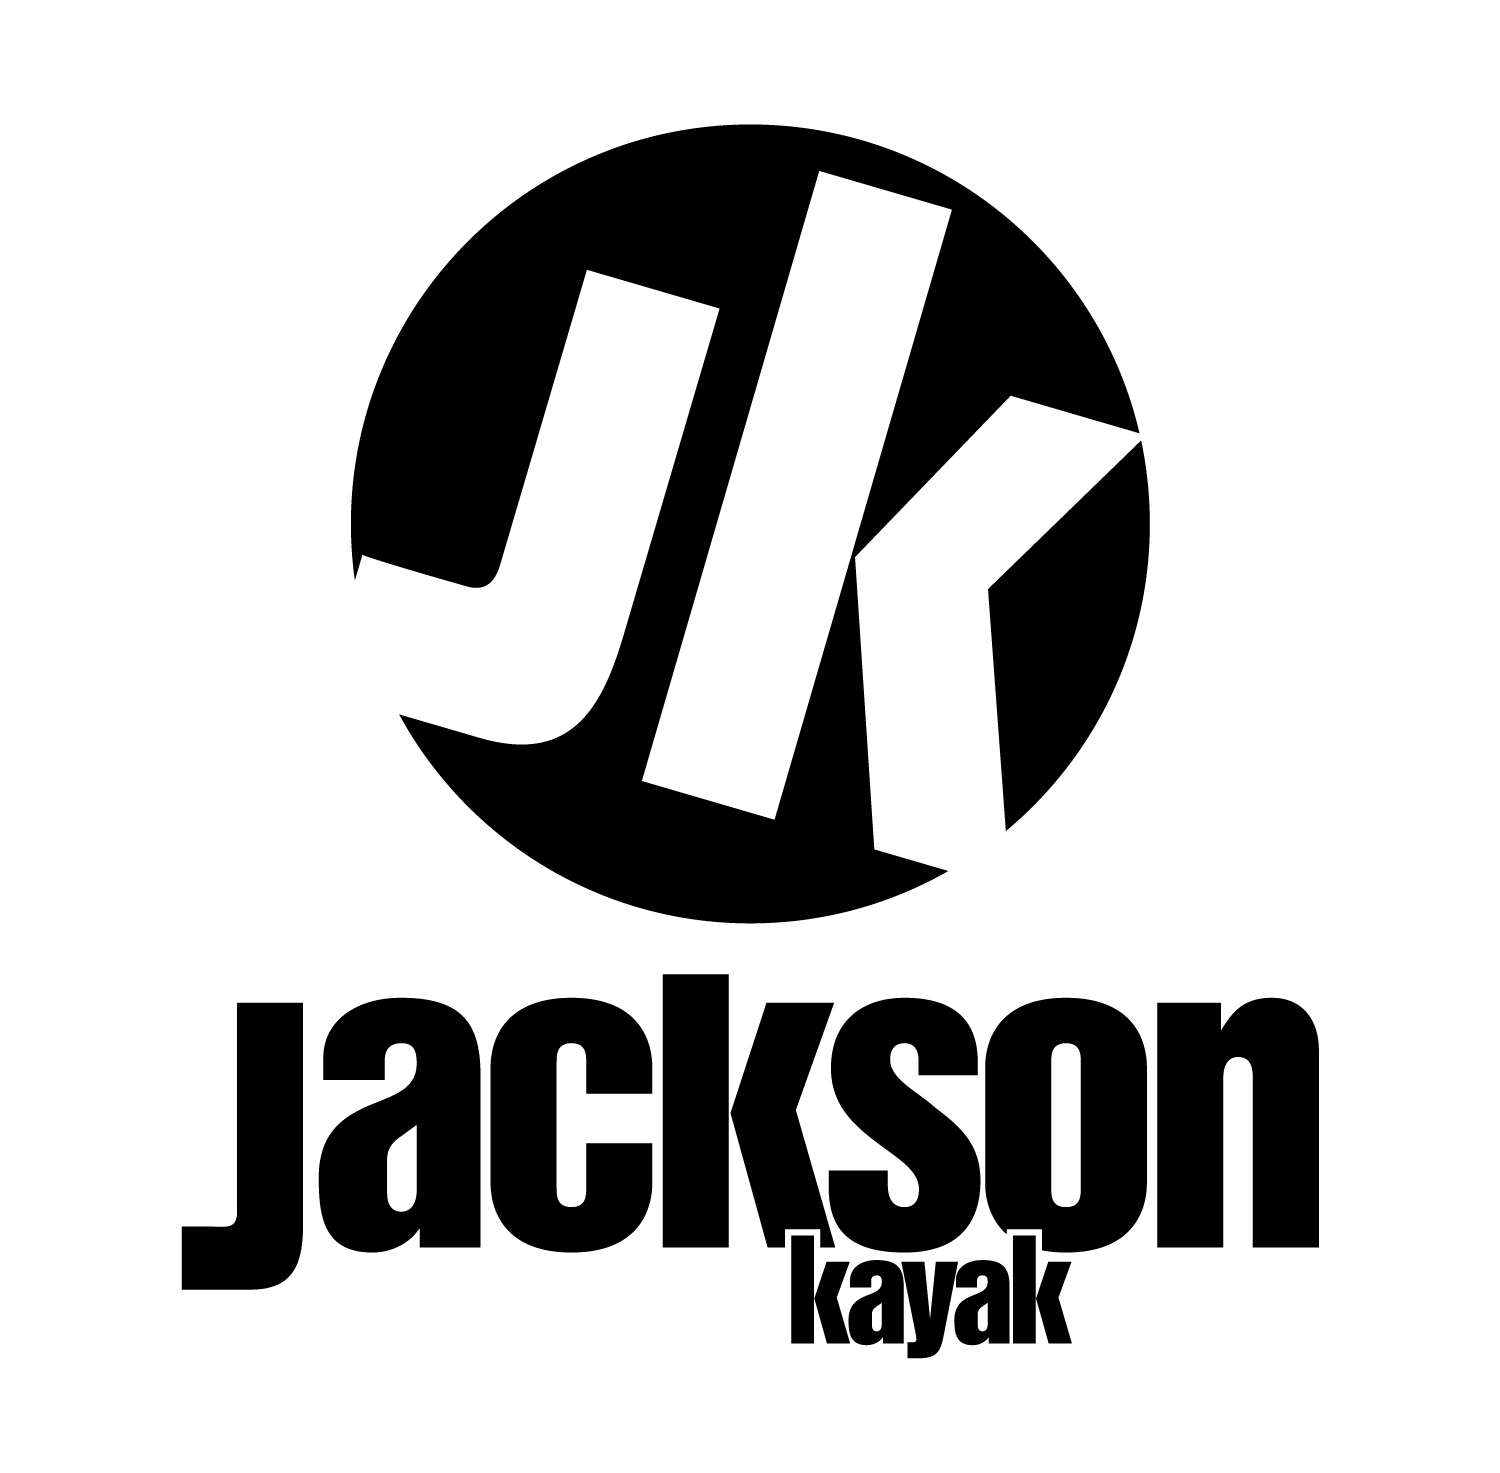 Kayak Logo - Logos - Jackson Kayak